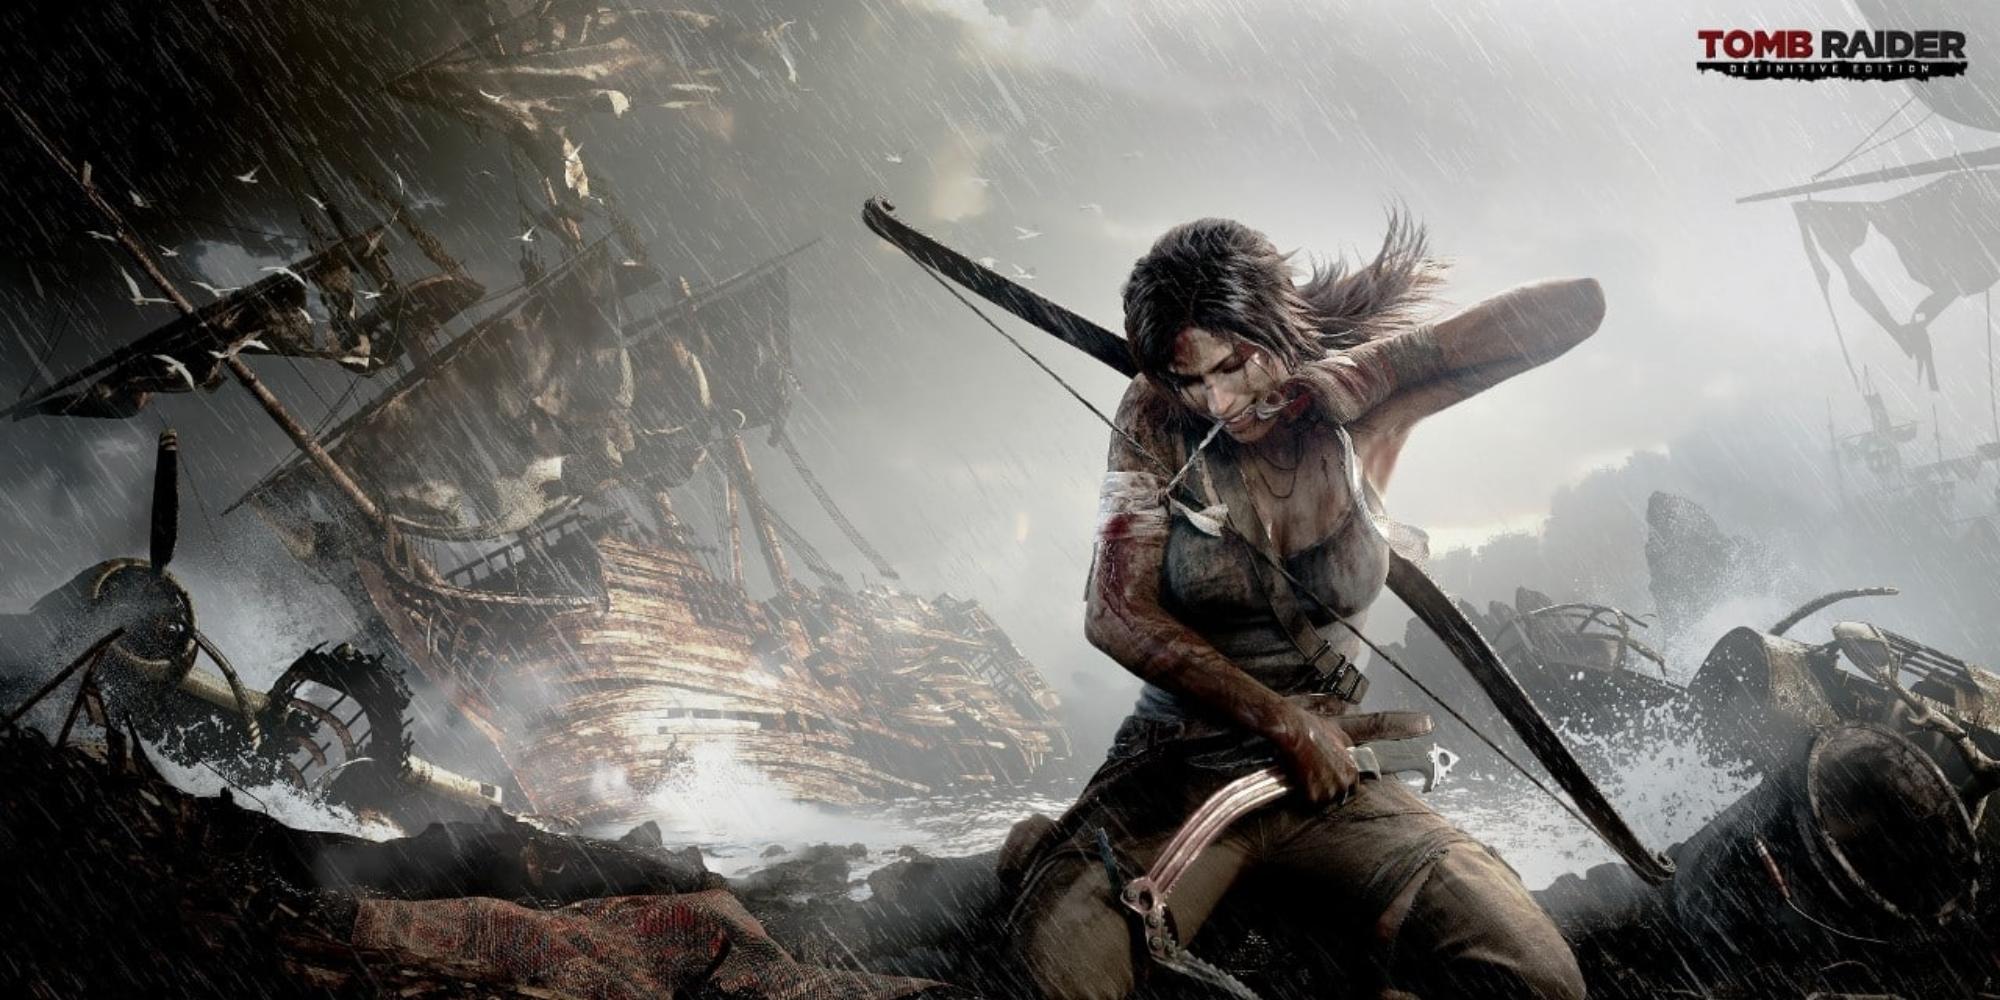 Cover Image for Próximo Tomb Raider será um Jogo de Mundo Aberto na Índia, Afirmam Rumores